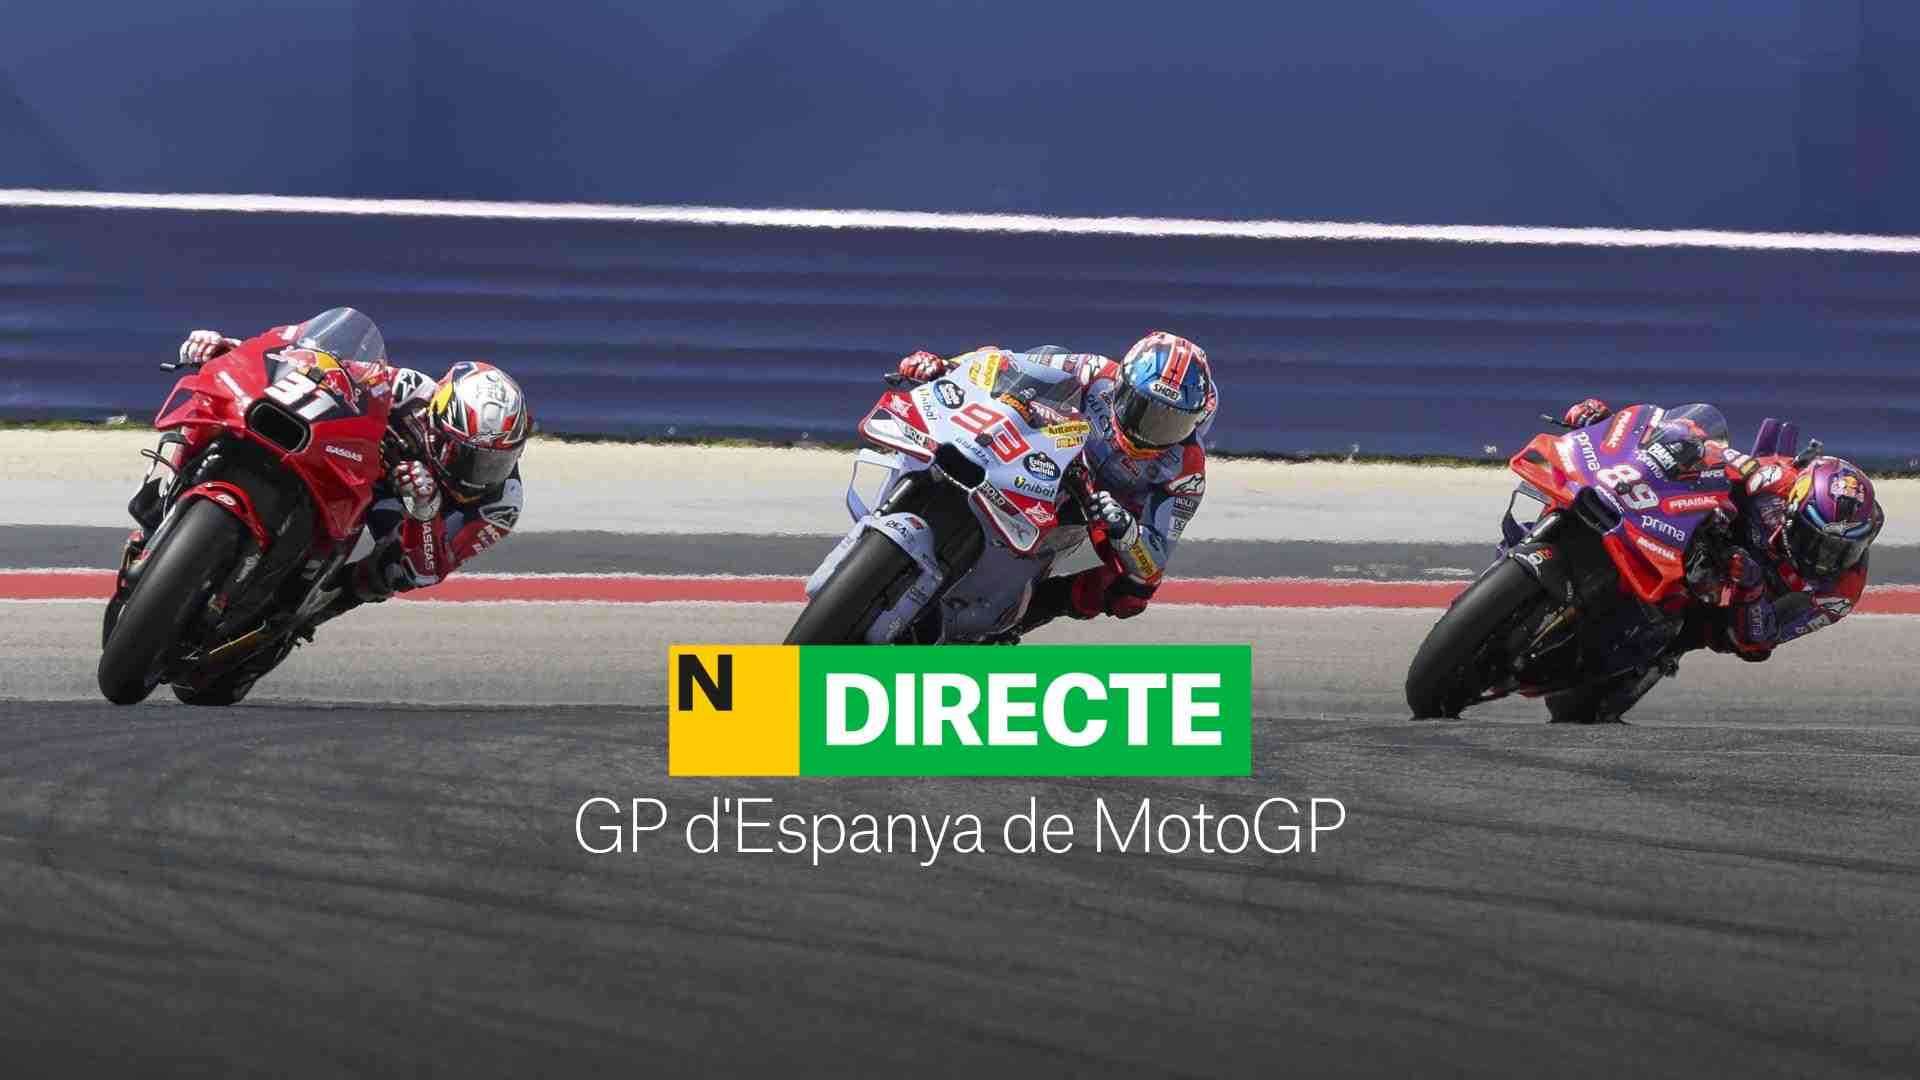 GP de España de MotoGP, DIRECTO | Resultado y resumen